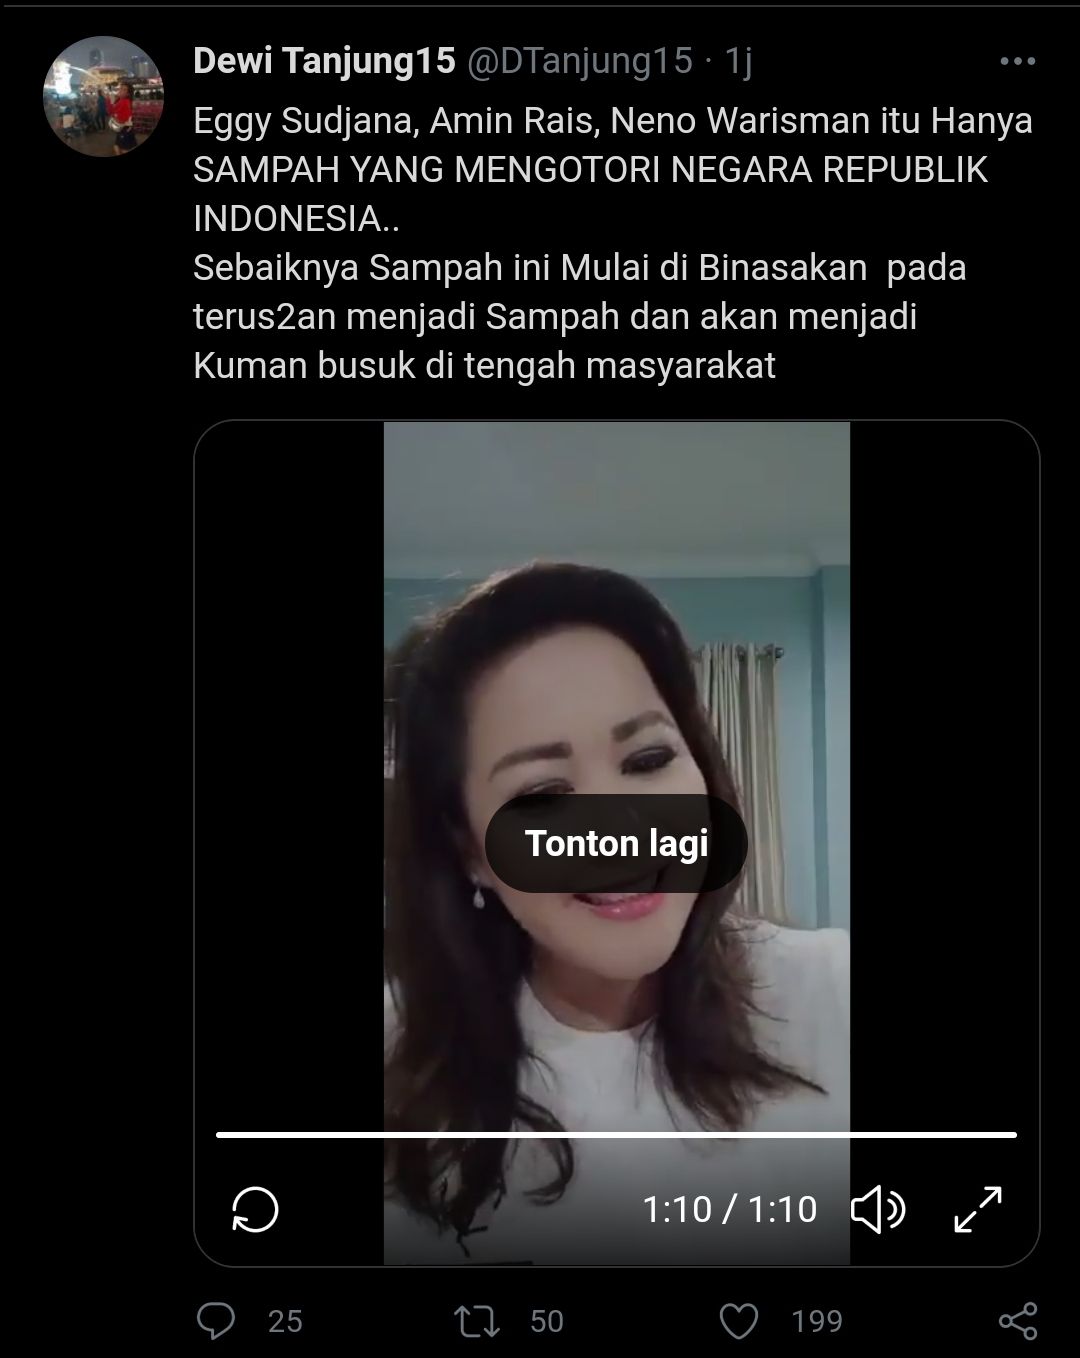 Tangakapan layar cuitan Dewi Tanjung soal sampah negara./